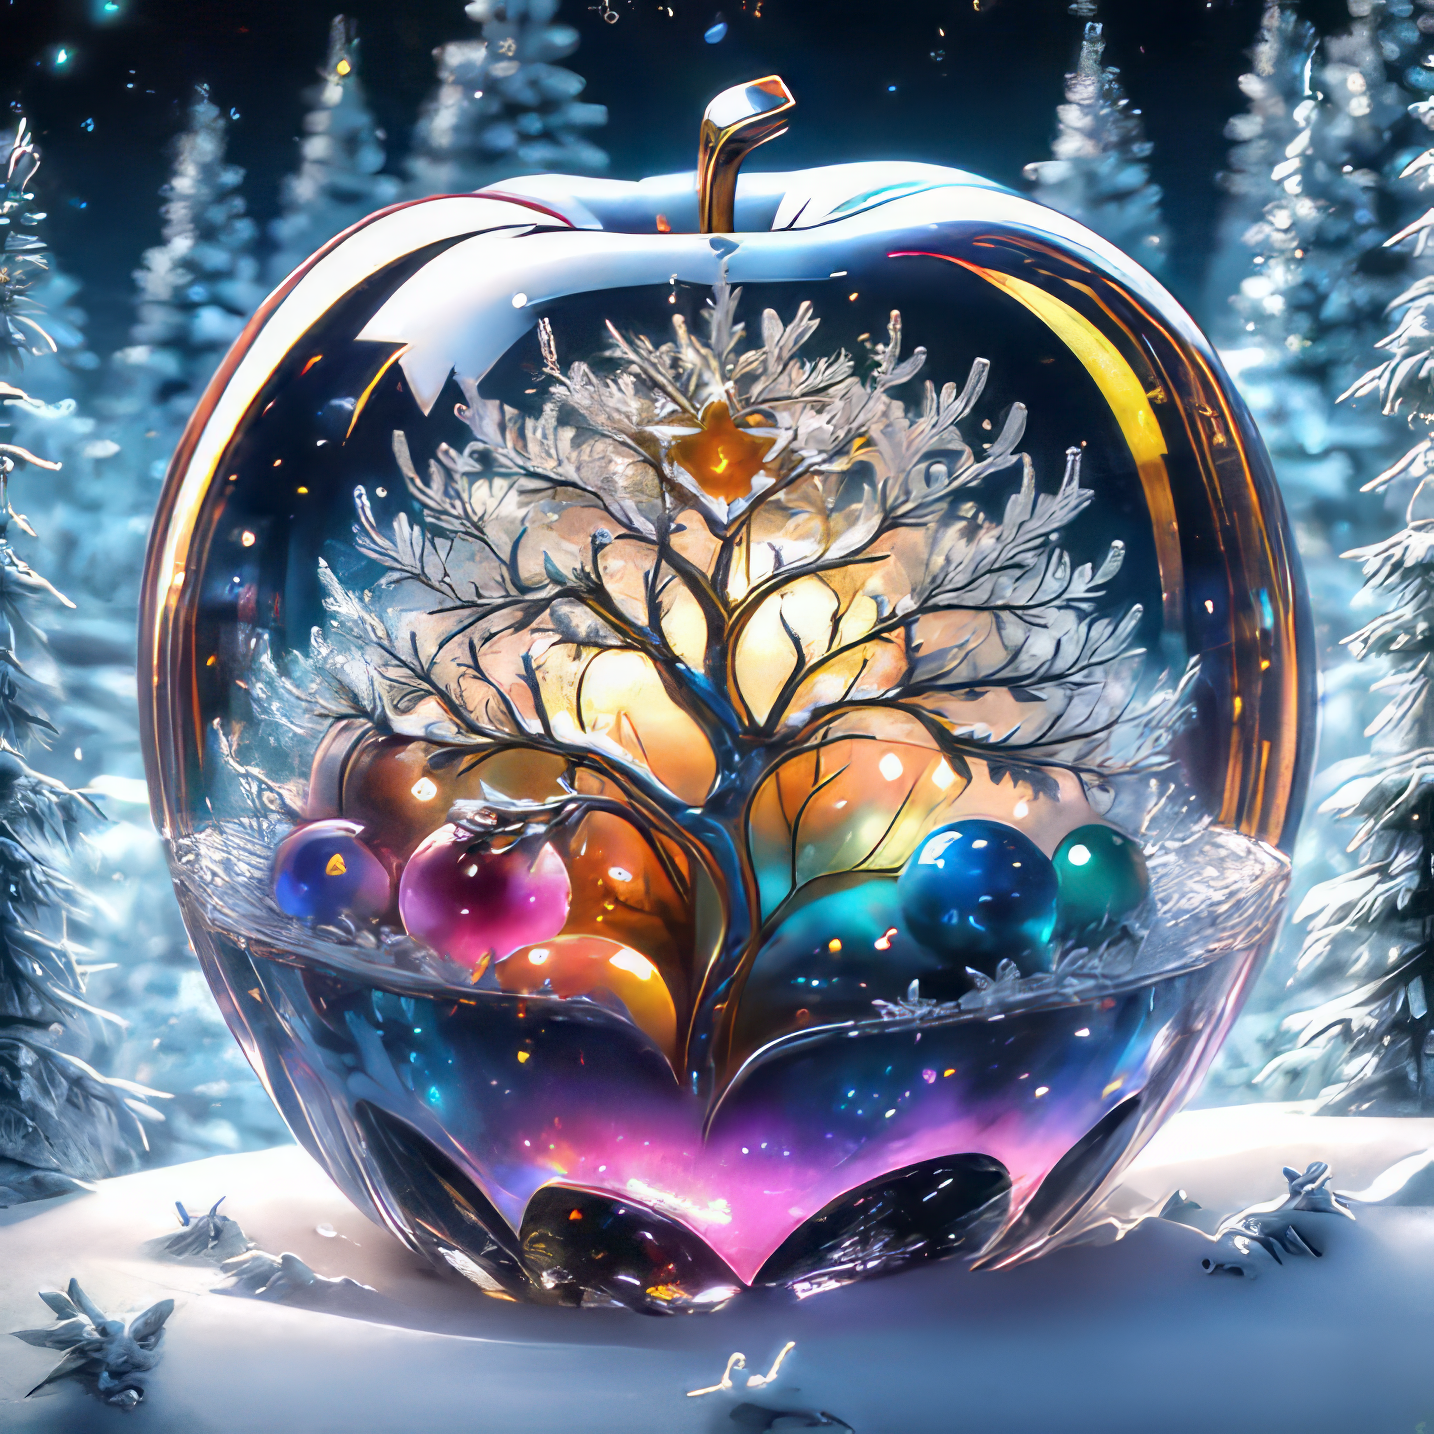 幻想的な雪景色が映り込むガラスのリンゴのかっこいいファンタジー風のリアルフリーイラスト素材